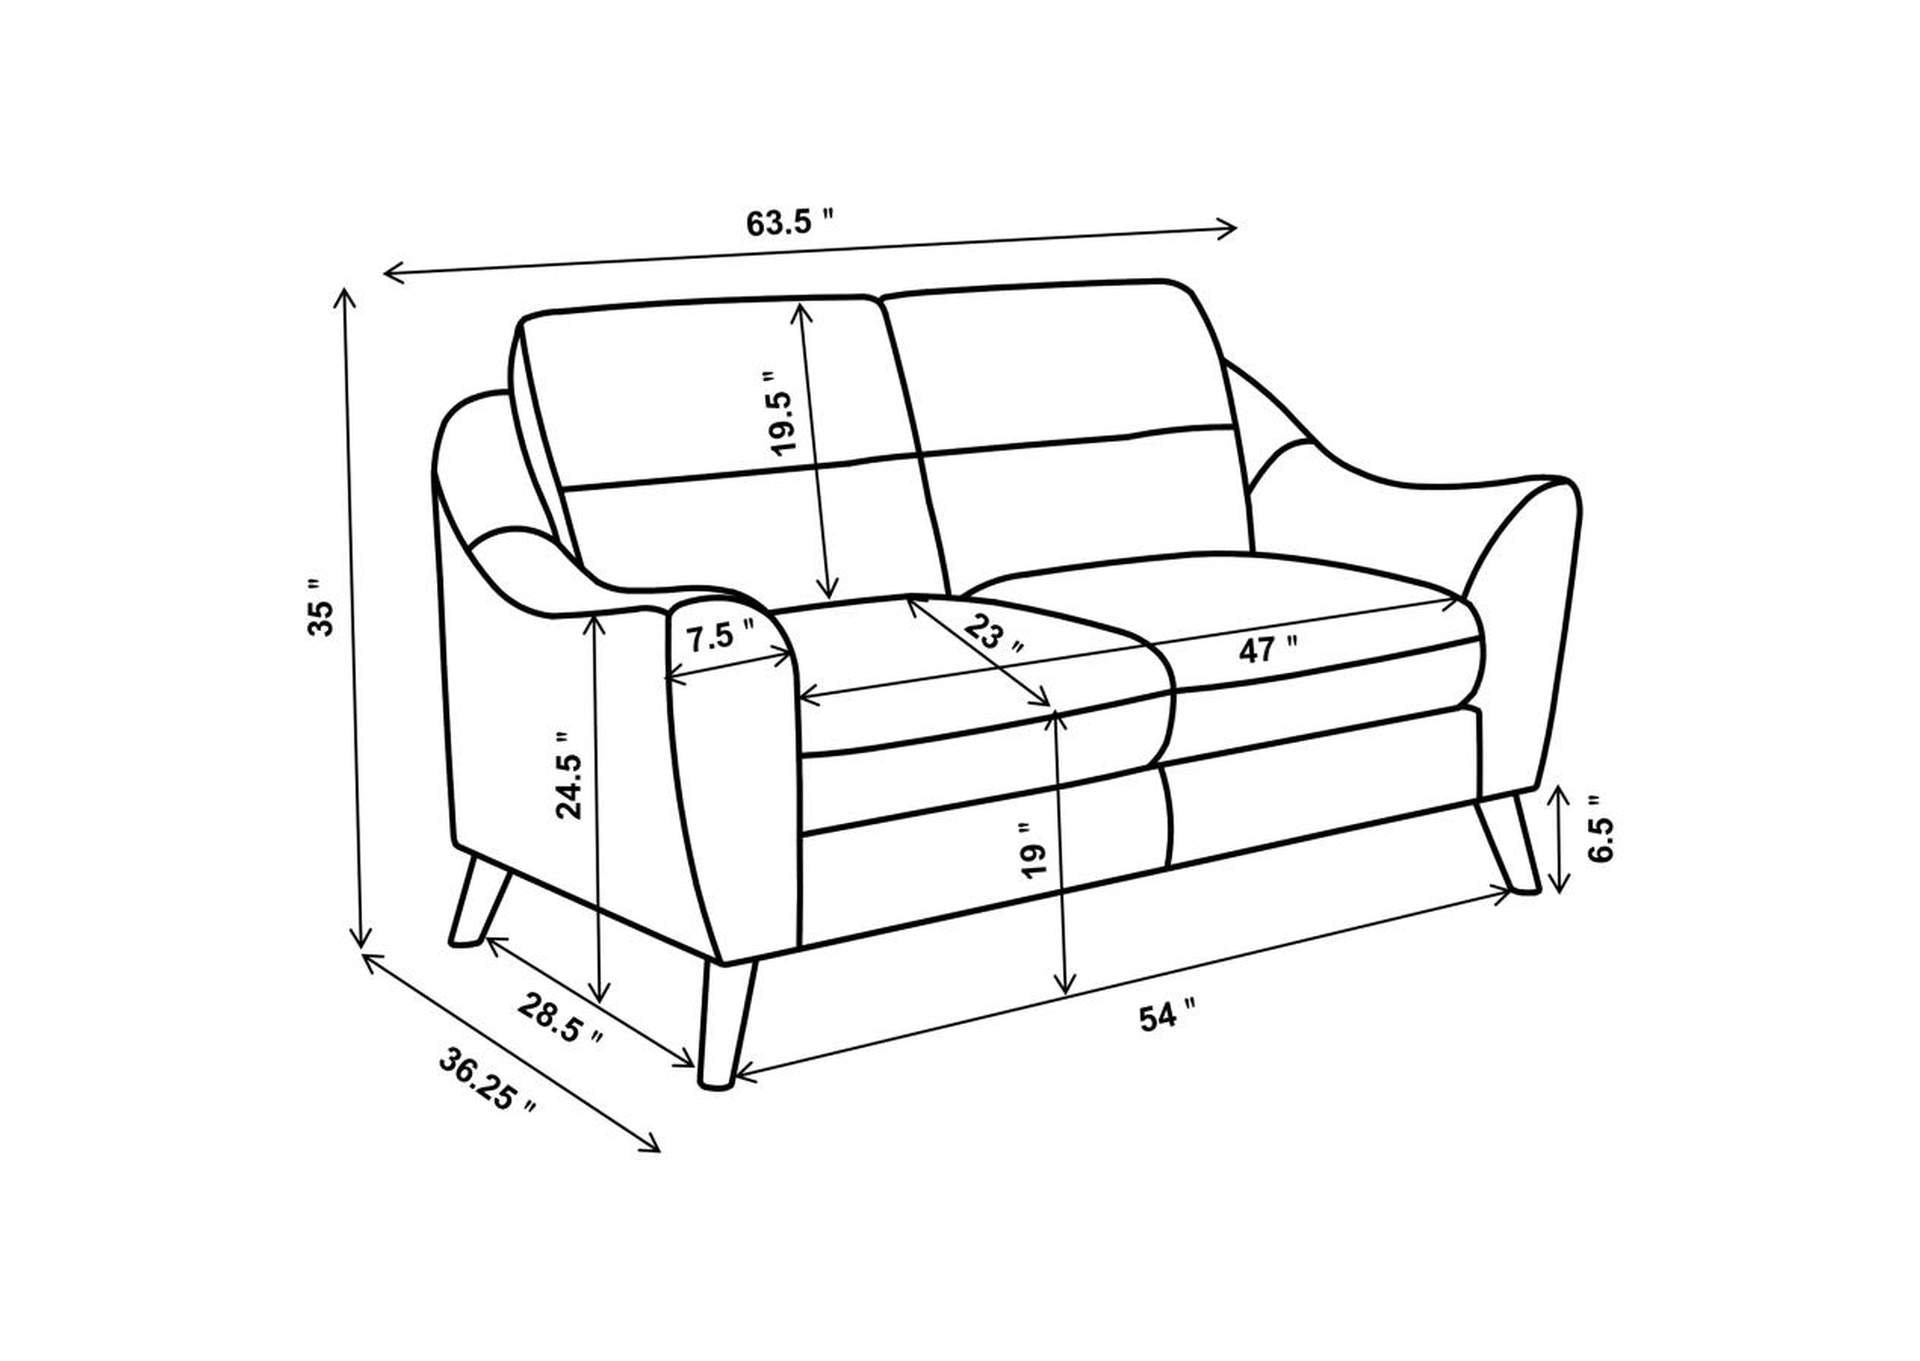 Gano 2 - piece Sloped Arm Living Room Set Navy Blue,Coaster Furniture